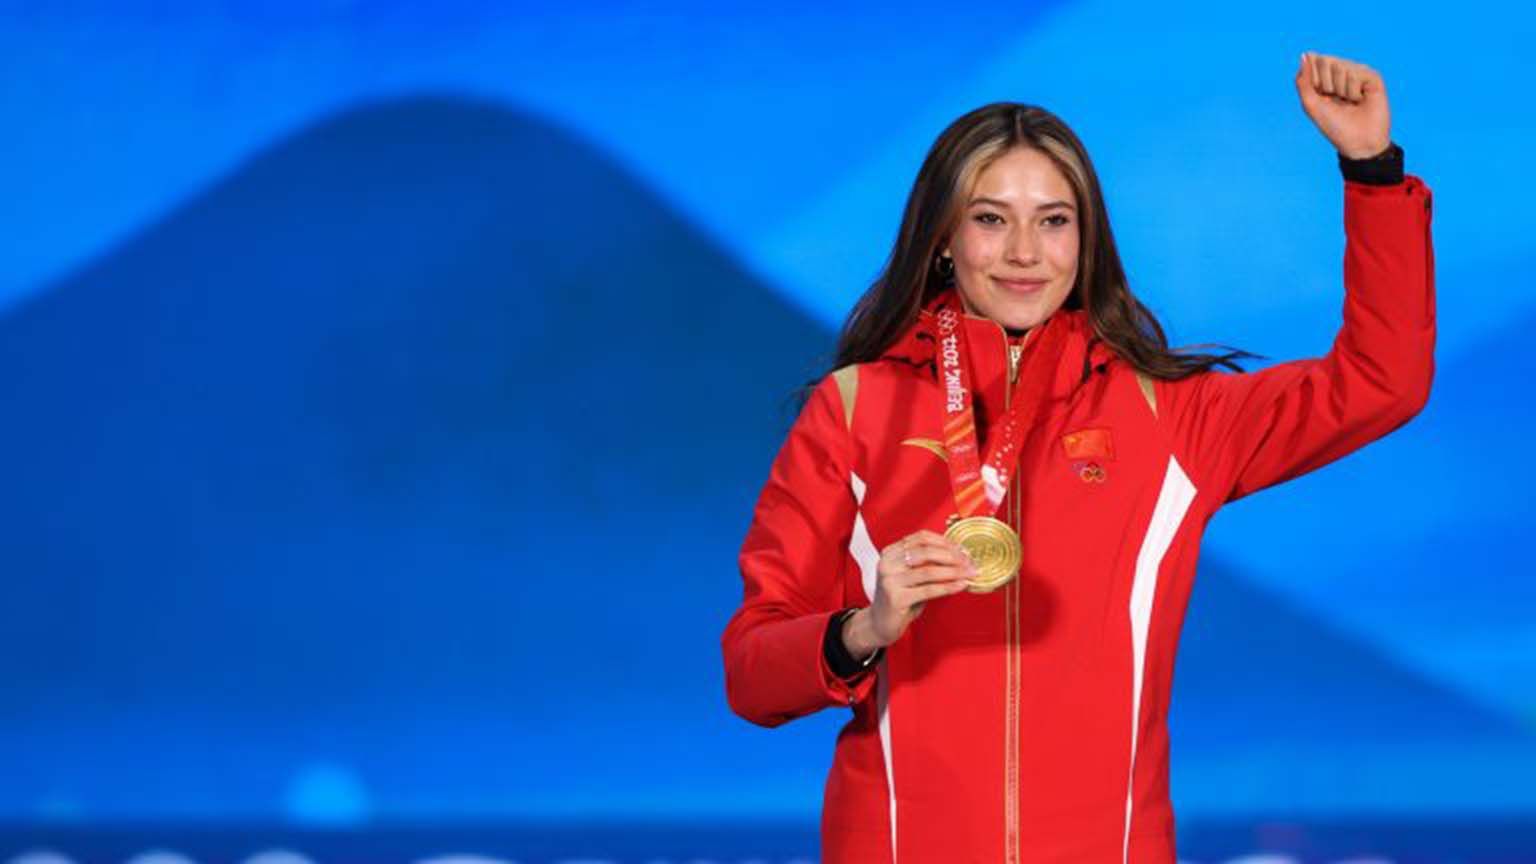 Eileen Gu breaks the internet after winning gold in Beijing photo Trend Fool